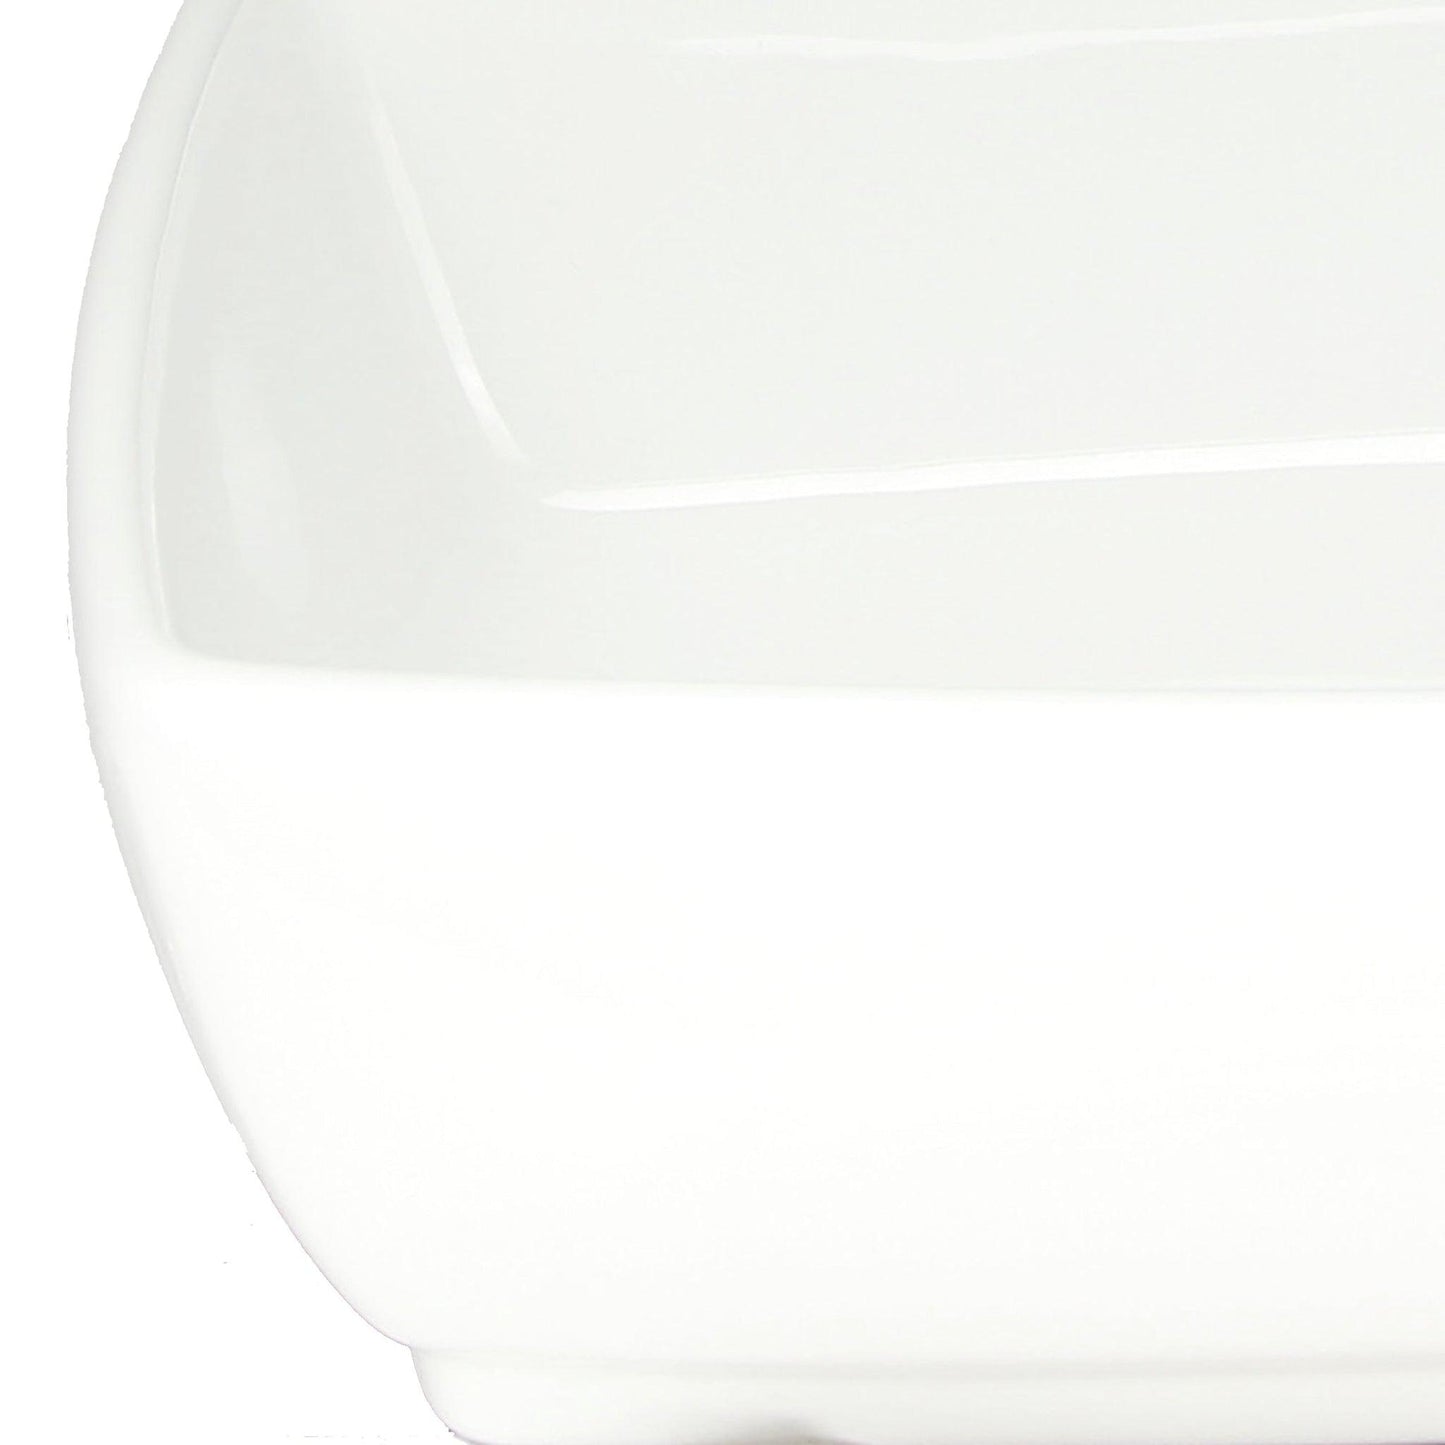 Nantucket Sinks Brant Point 19" W x 13" D Rectangular Porcelain Enamel Glazed White Ceramic Vessel Sink